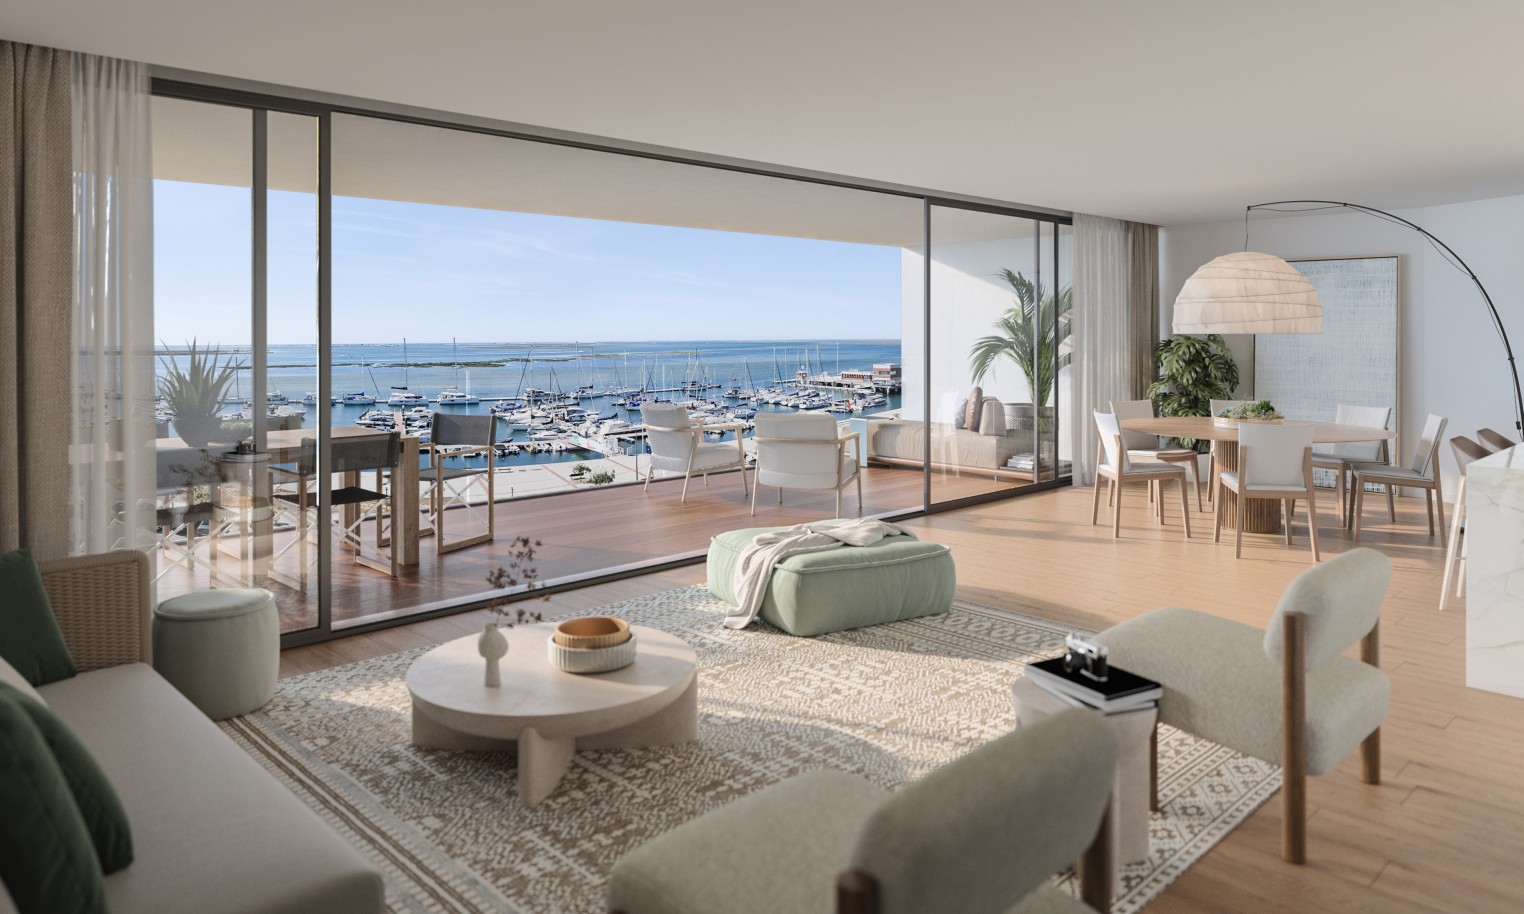 Appartements neufs avec vue sur mer, 1, 2 & 3 chambres, à vendre à Olhão, Algarve_248747